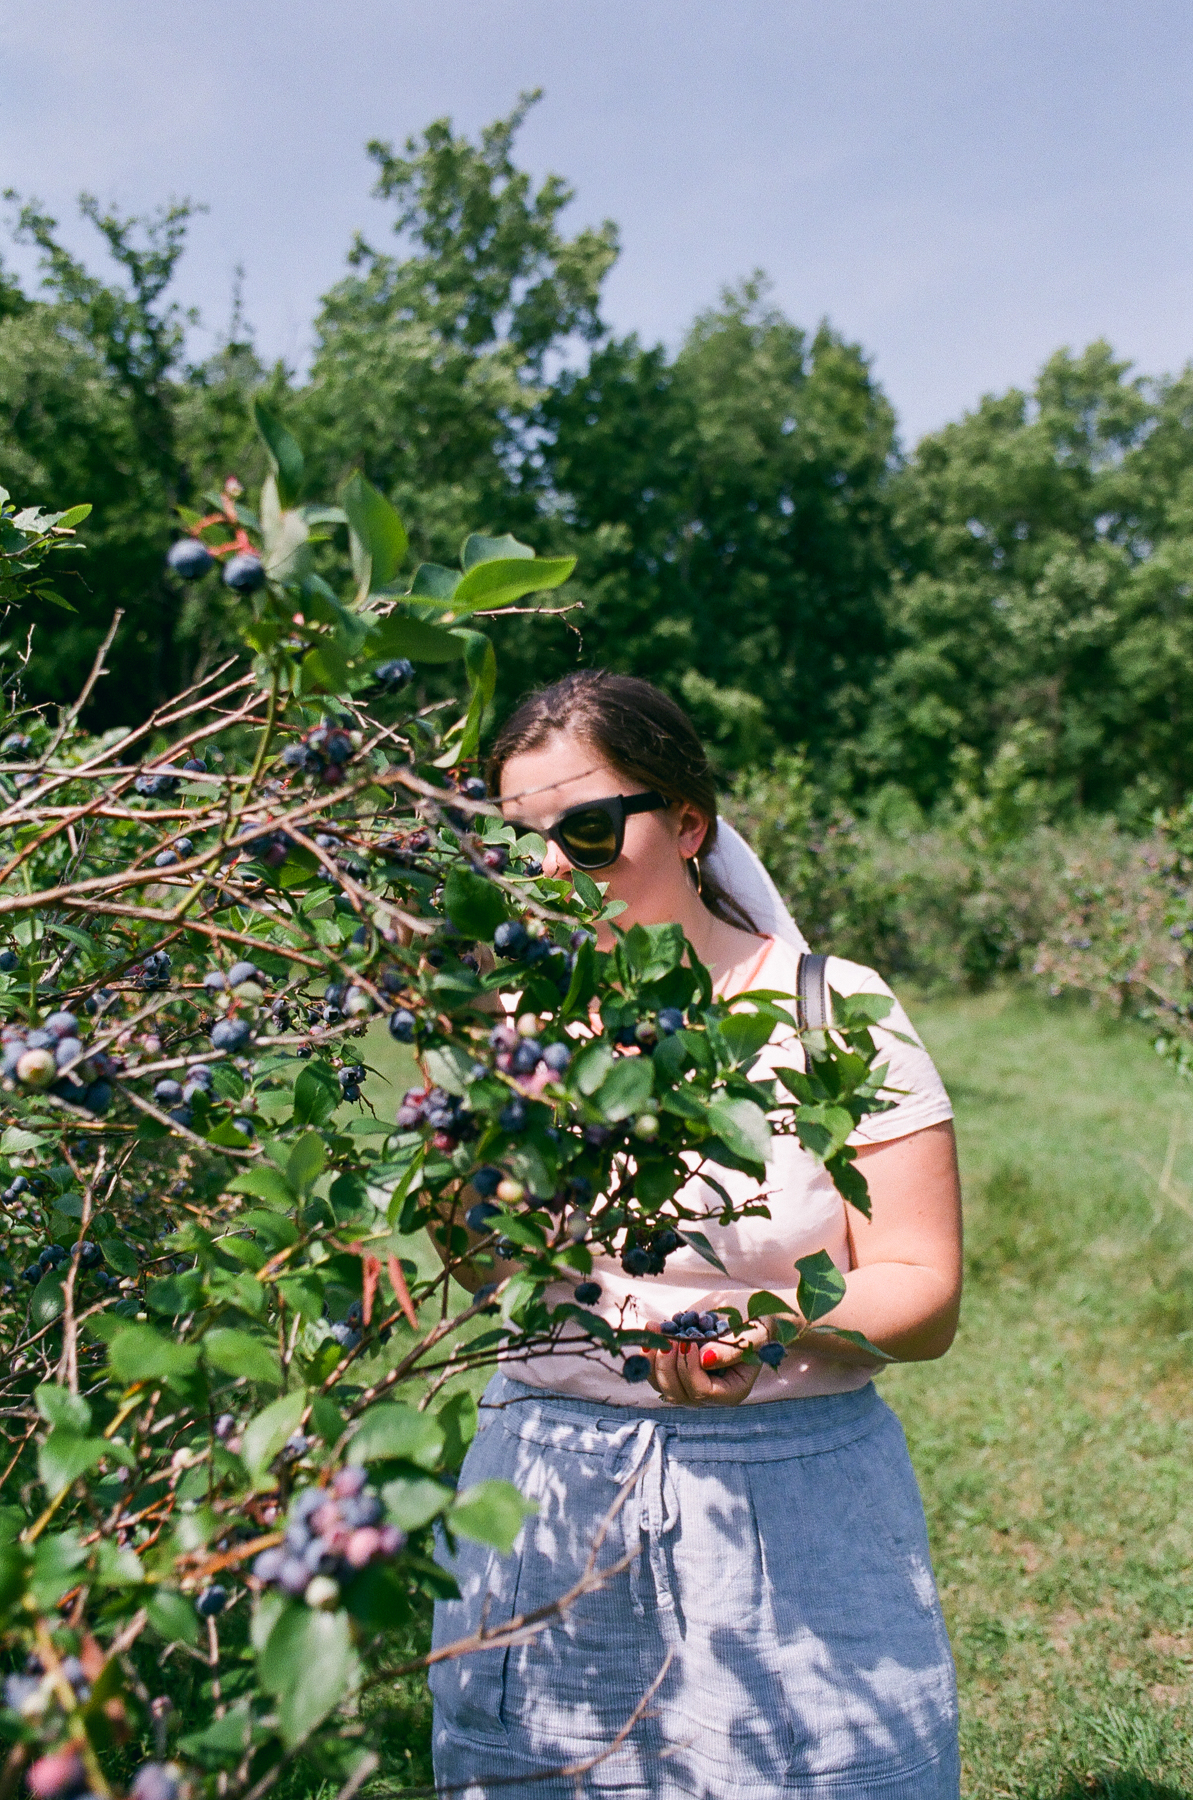 Picking blueberries outside